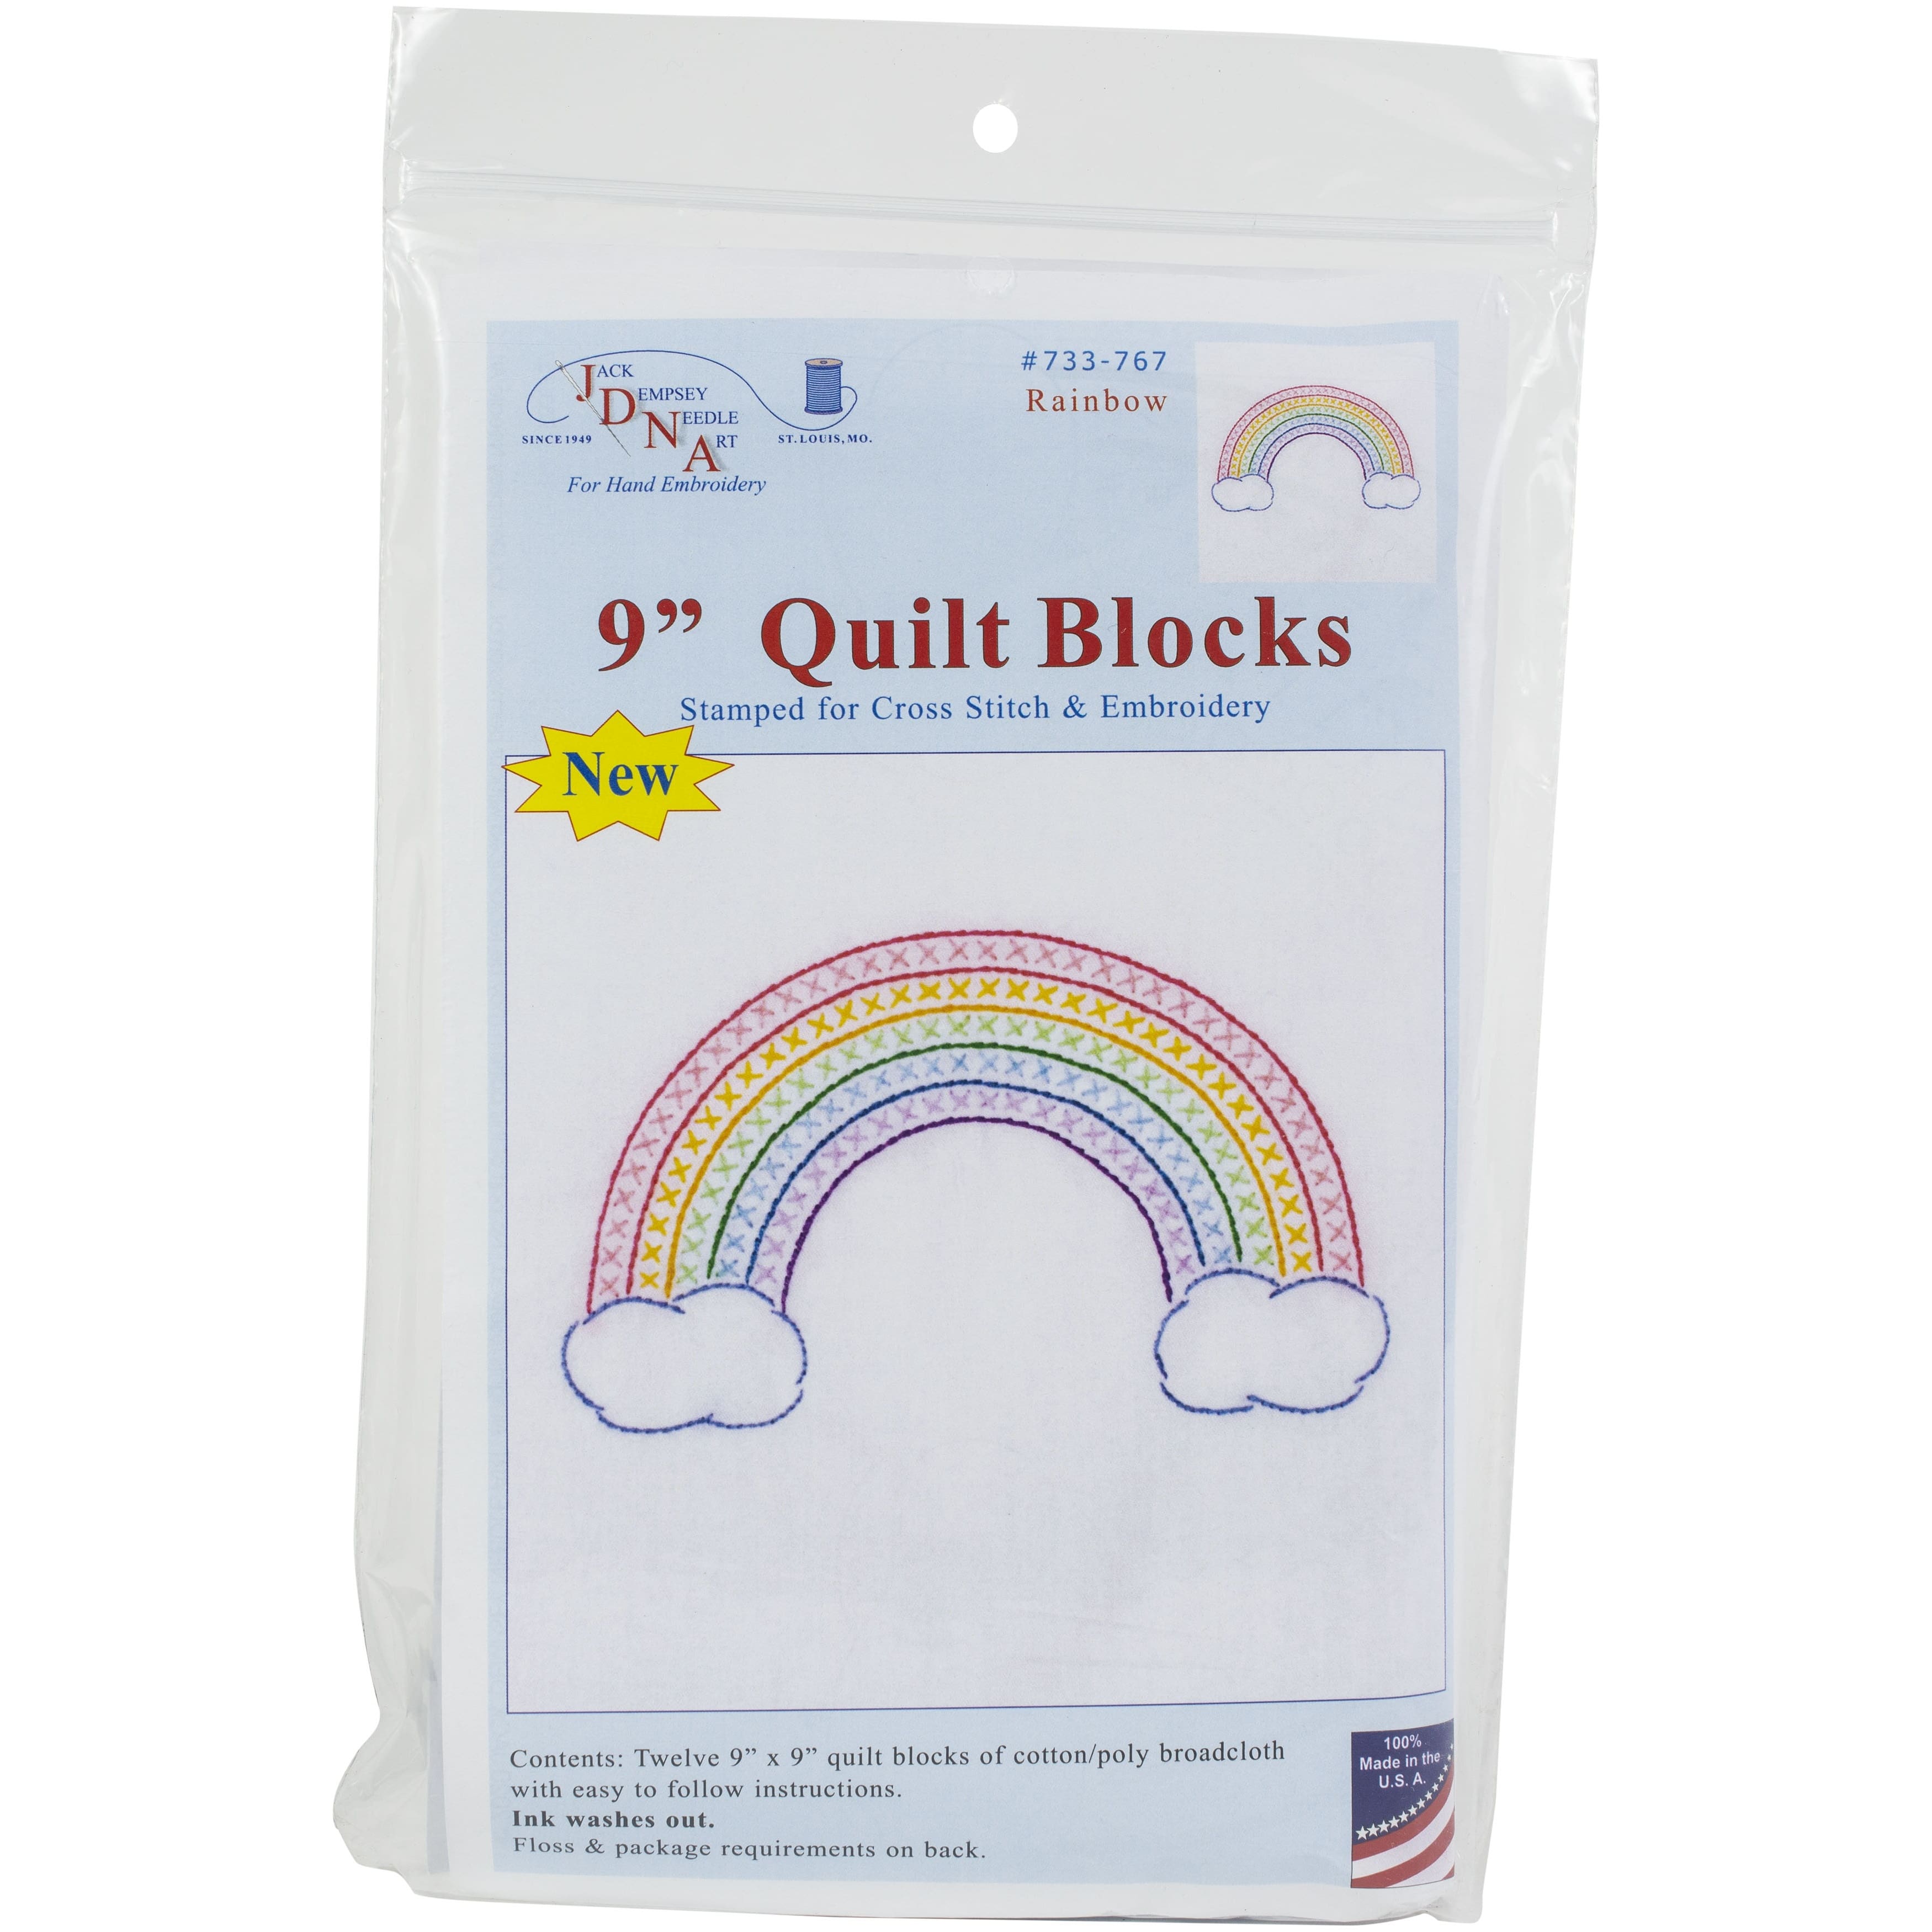 Jack Dempsey Rainbow Stamped White Quilt Blocks